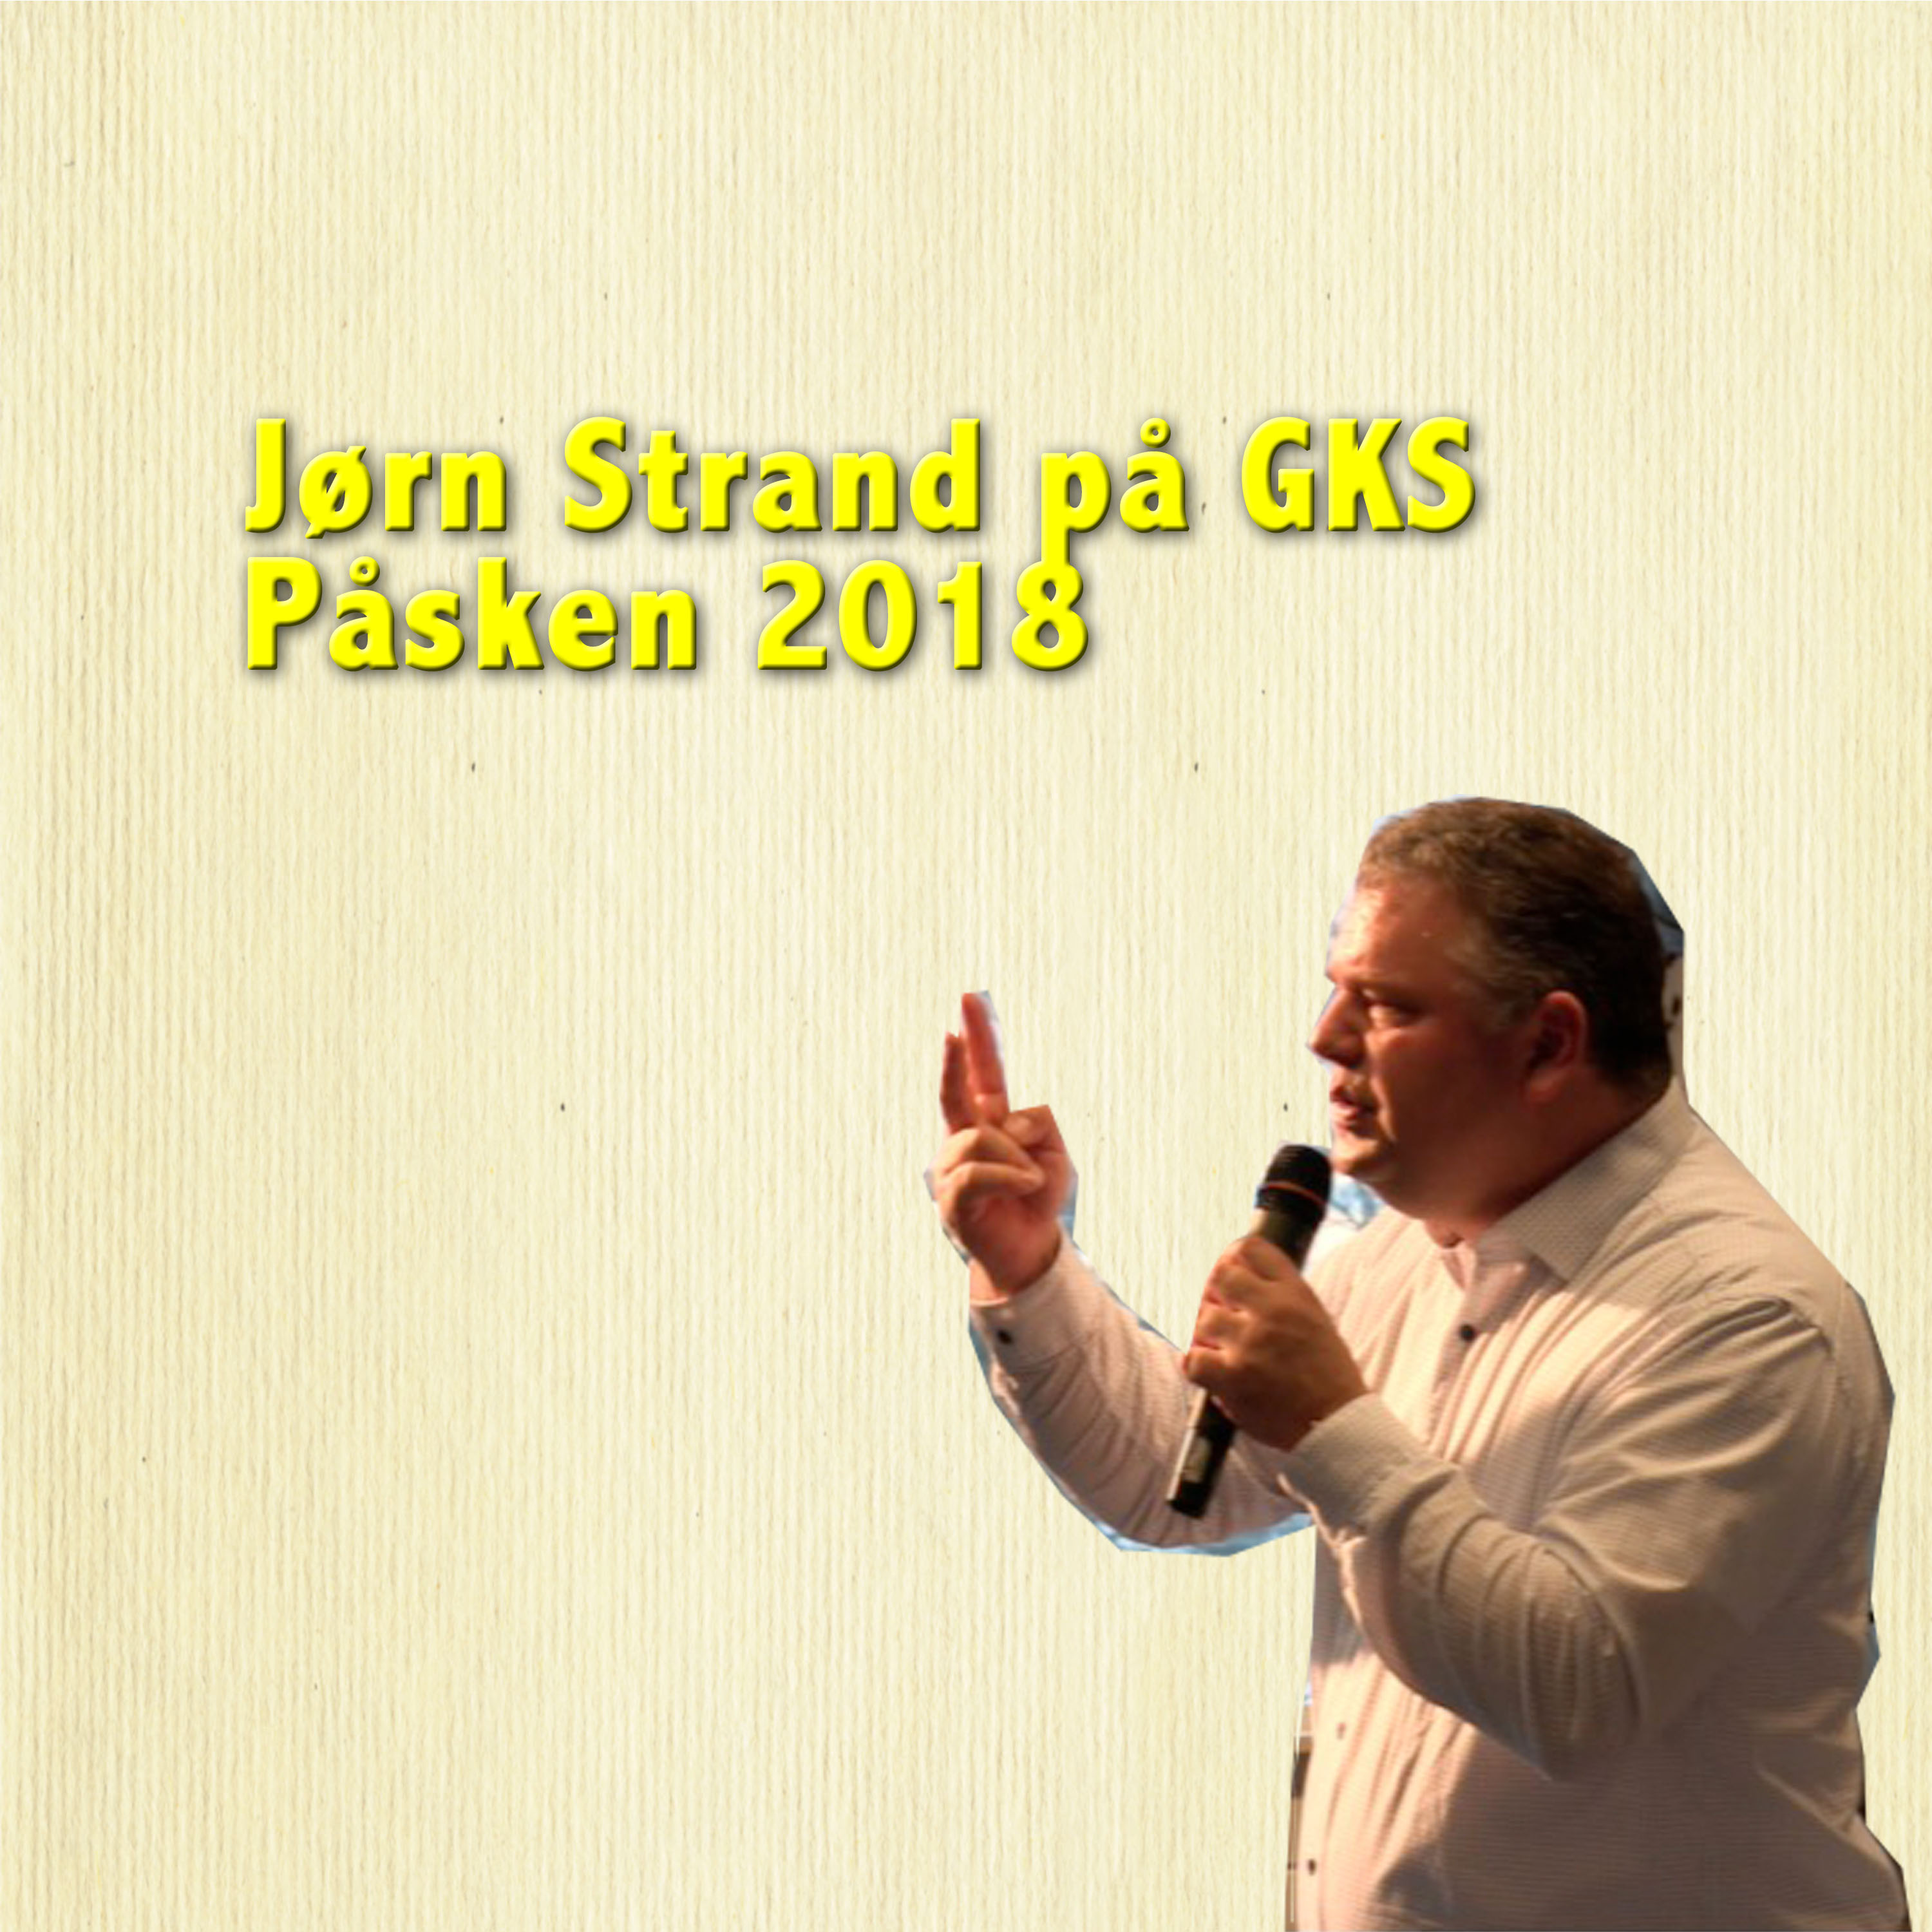 Jørn Strand på GKS. Påsken 2018